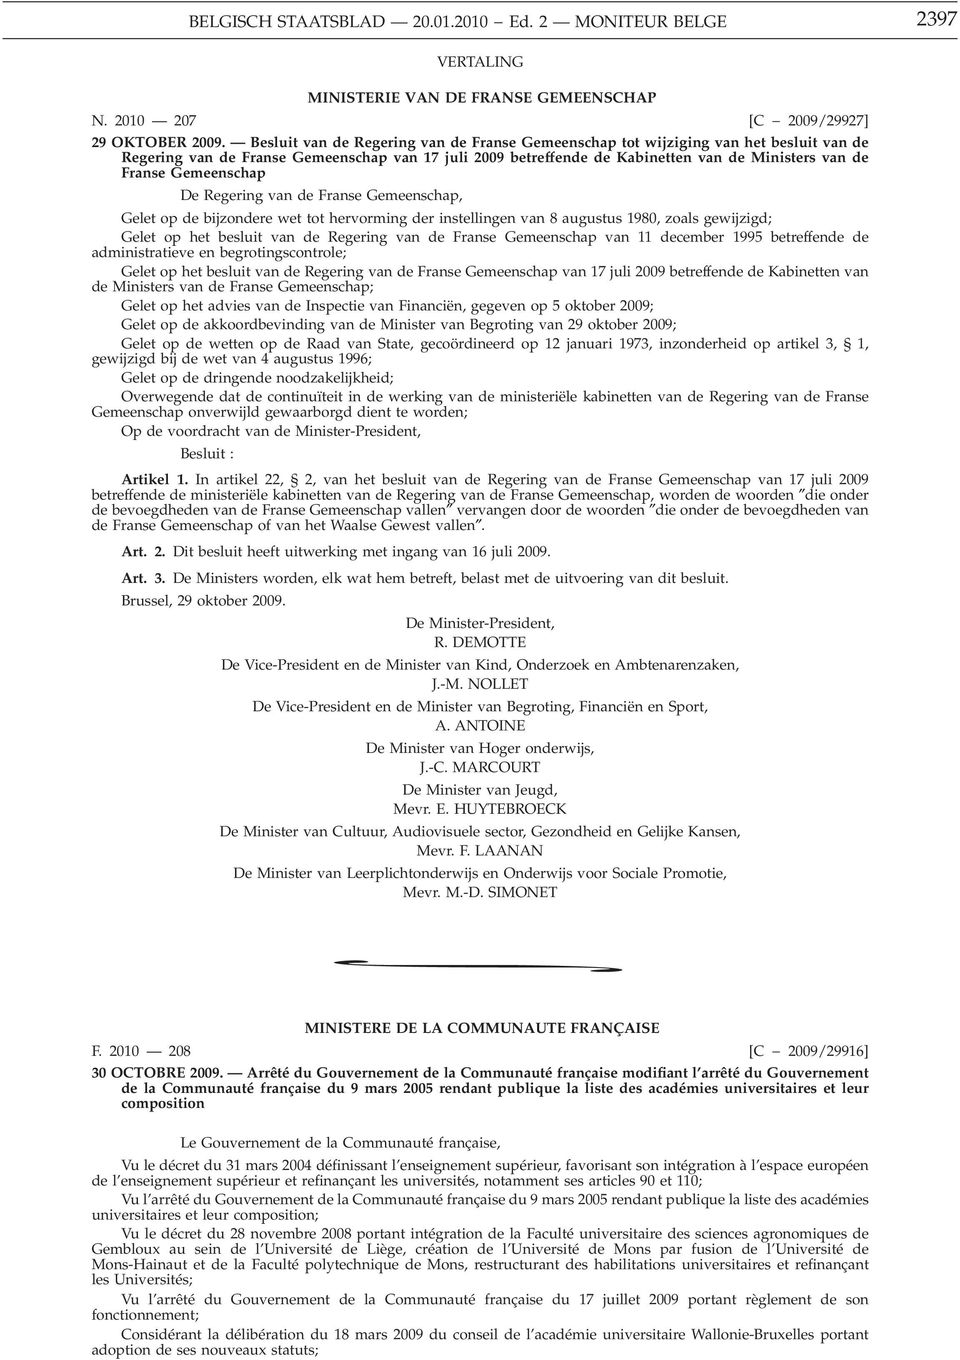 Gemeenschap De Regering van de Franse Gemeenschap, Gelet op de bijzondere wet tot hervorming der instellingen van 8 augustus 1980, zoals gewijzigd; Gelet op het besluit van de Regering van de Franse